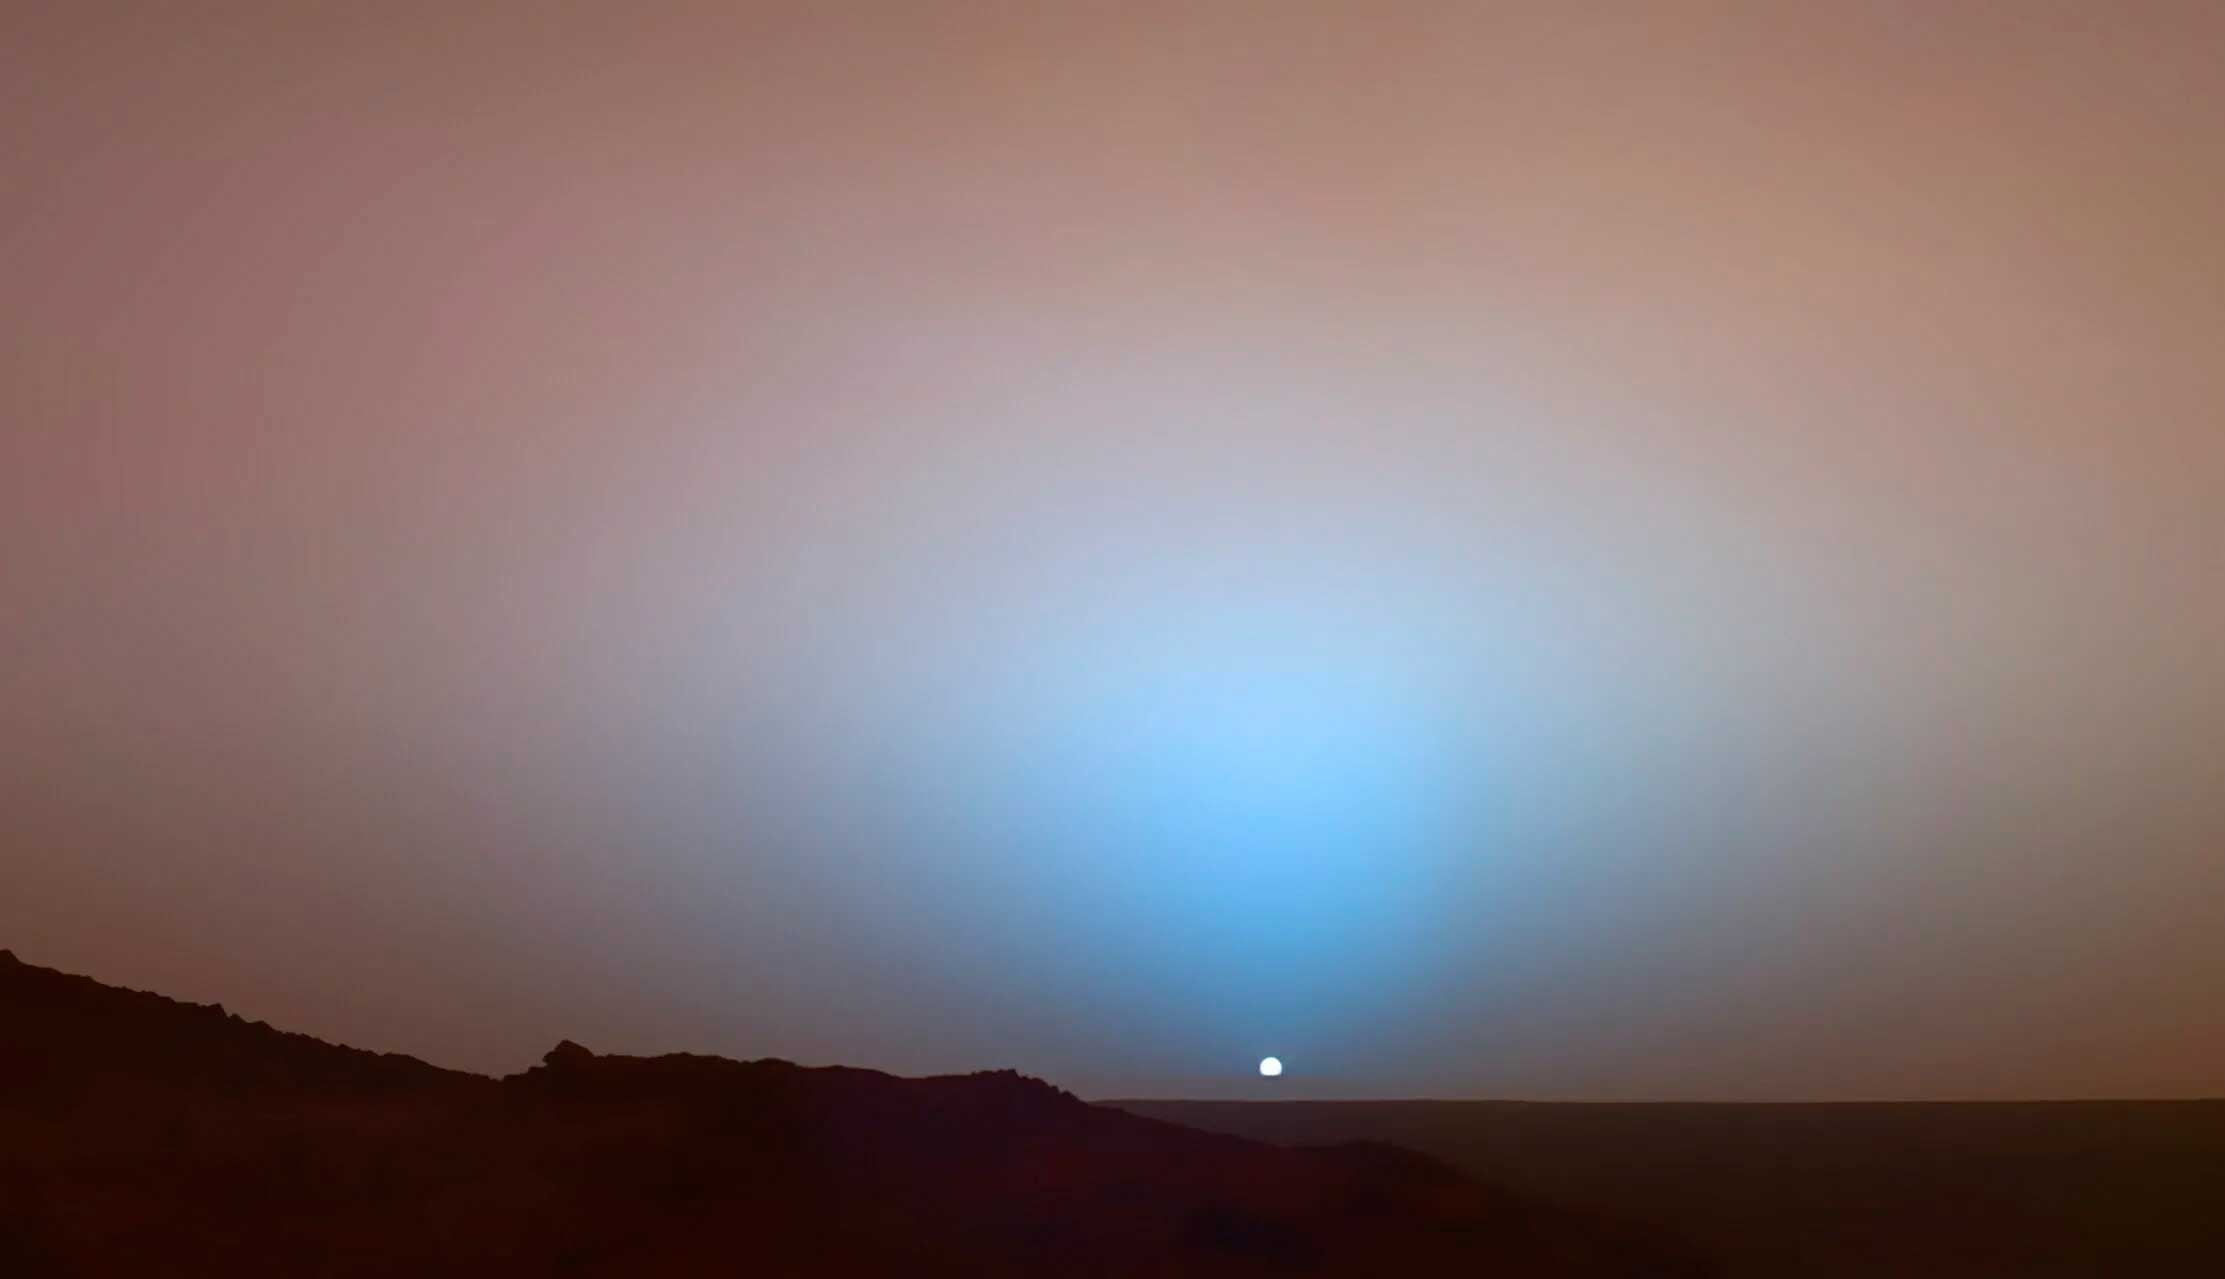 Закат на Марсе, снятый марсоходом «Куриосити». Согласитесь, выглядит совсем не инопланетно